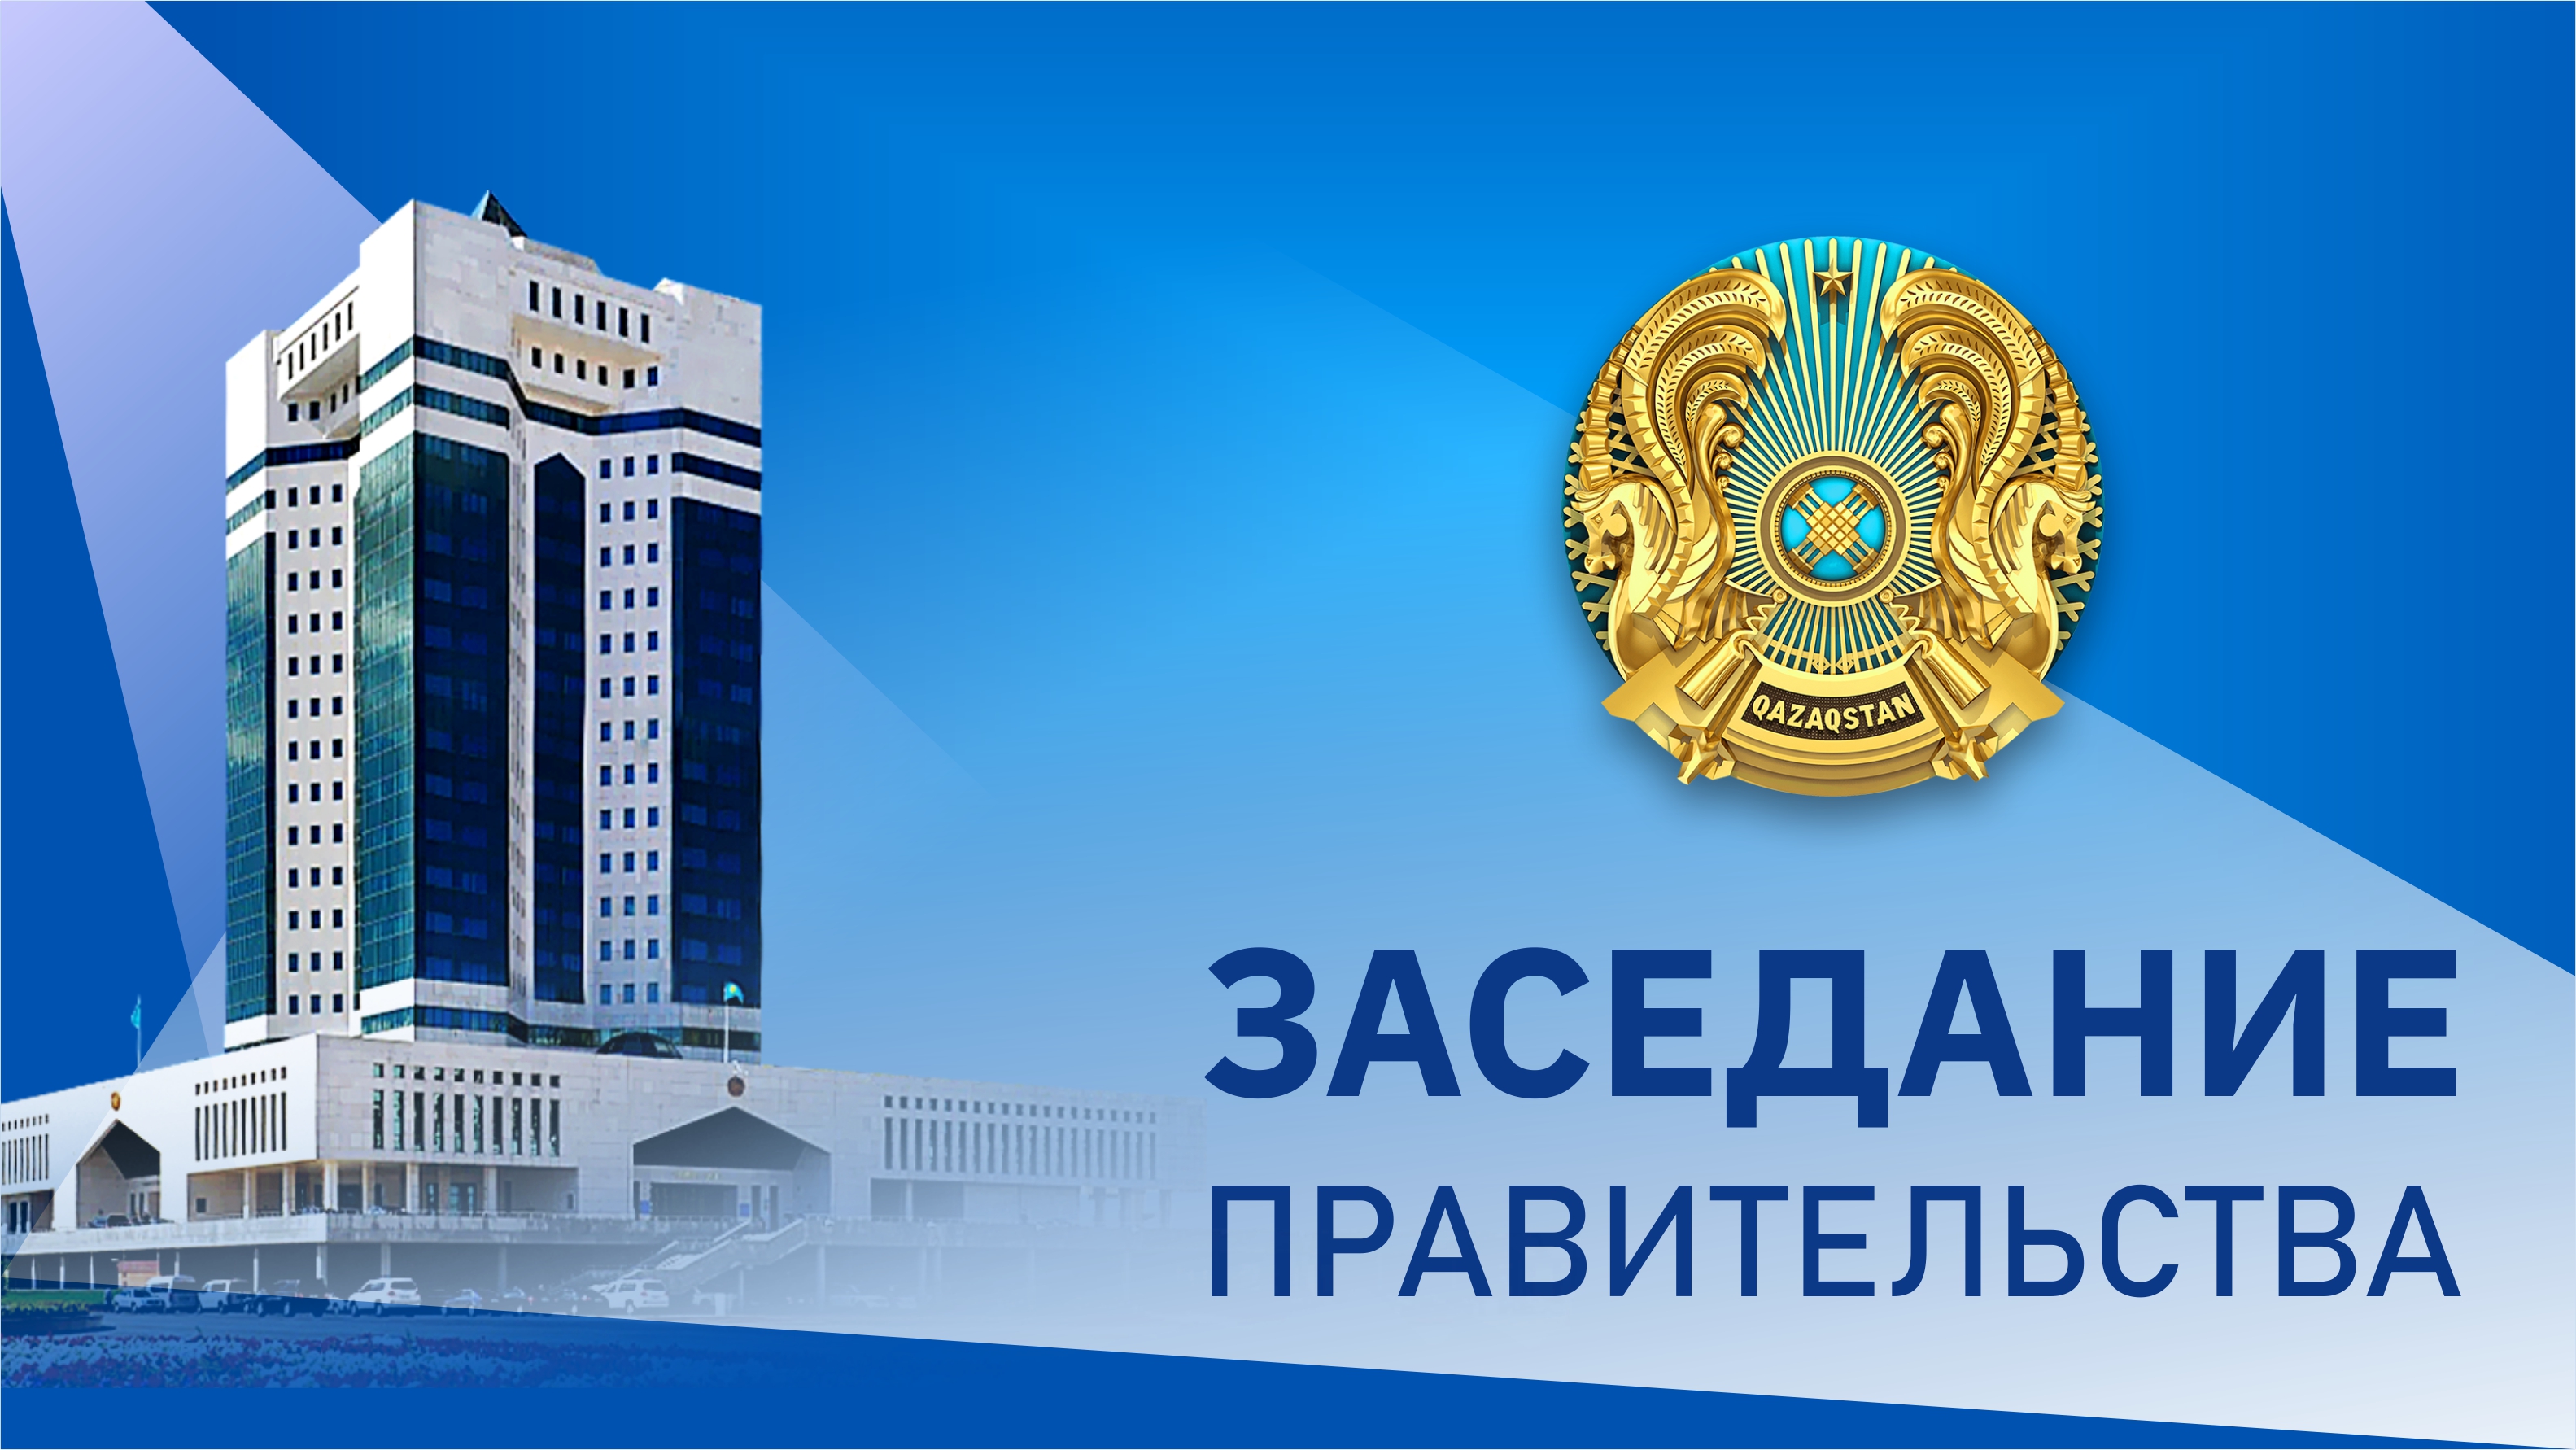 26 мая в Үкімет үйі состоится заседание Правительства Казахстана